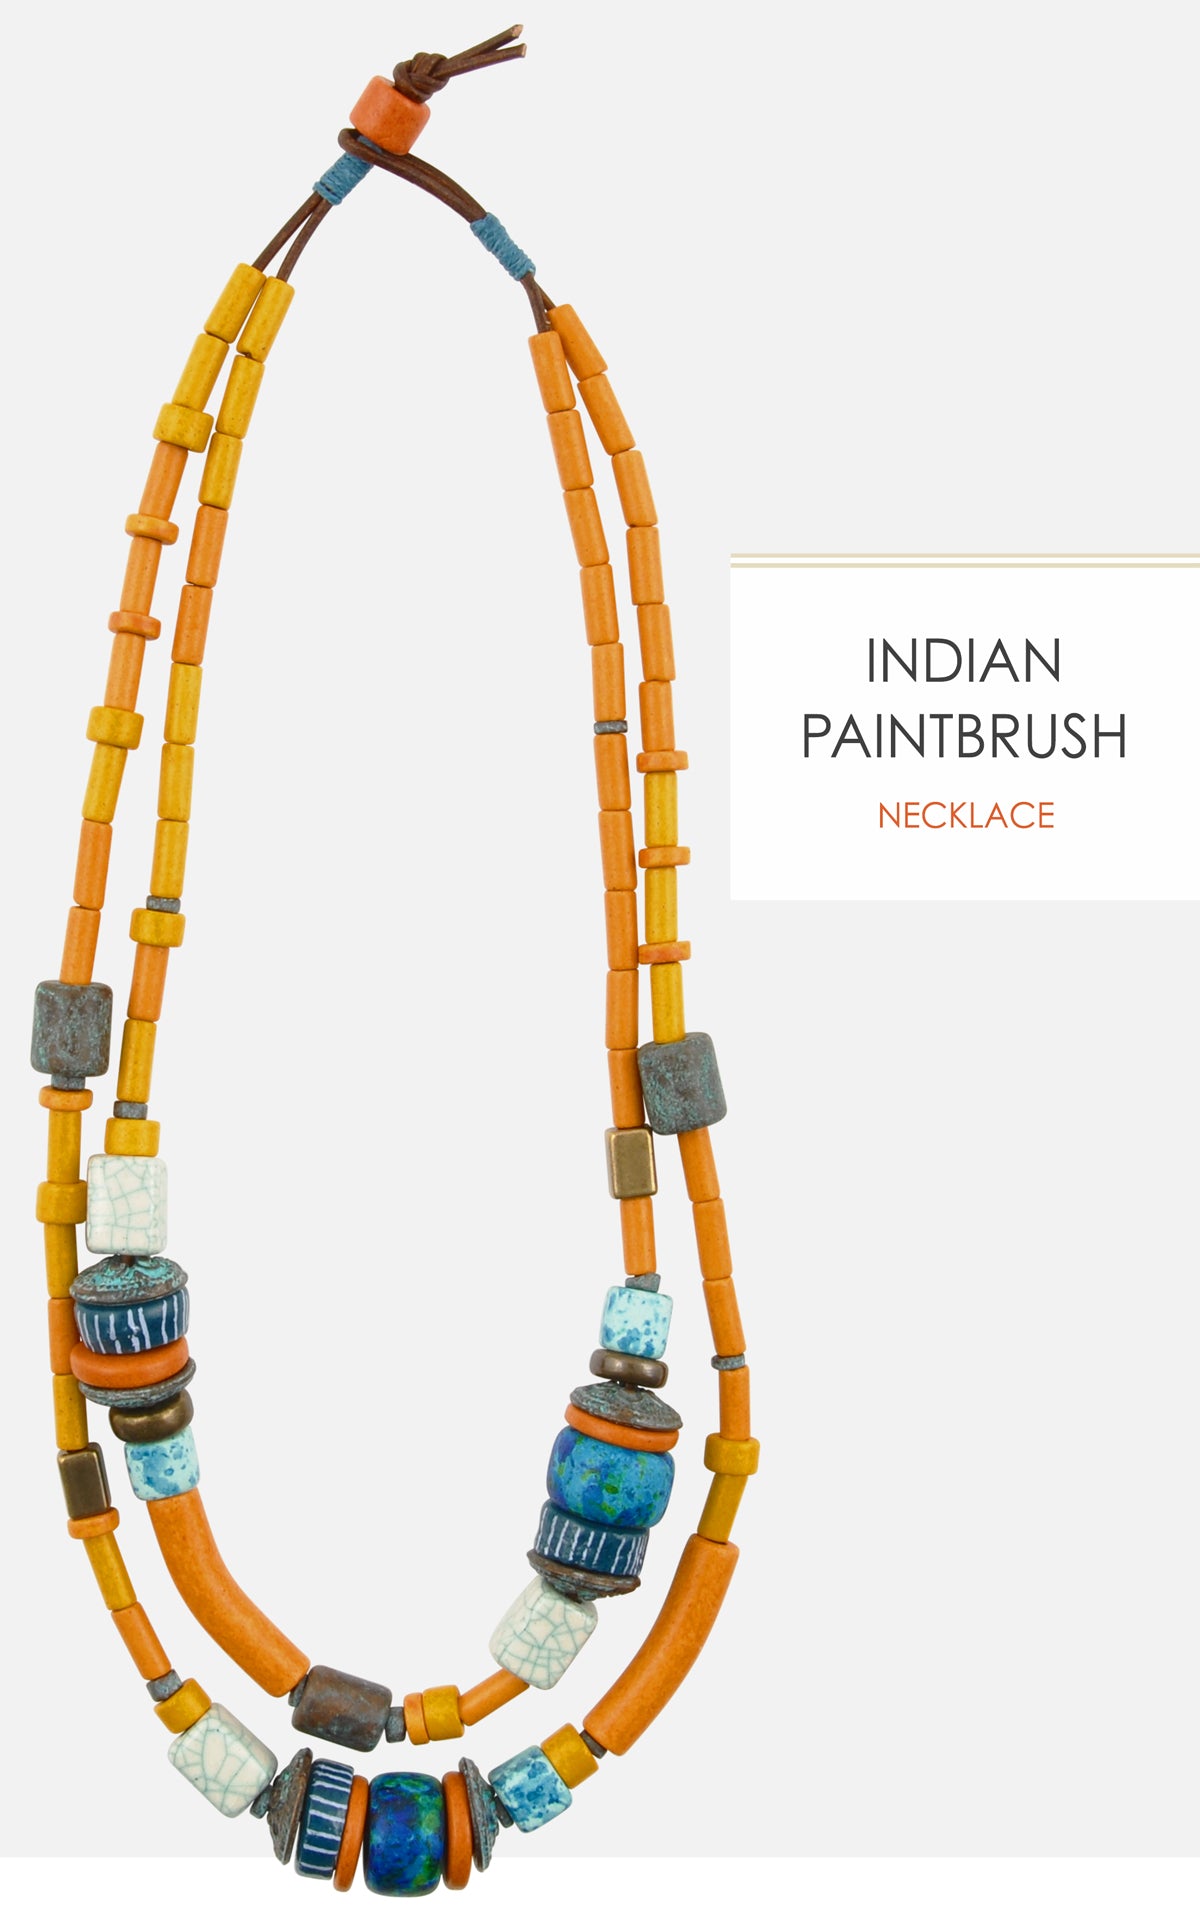 Indian Paintbrush Necklace magdakaminska